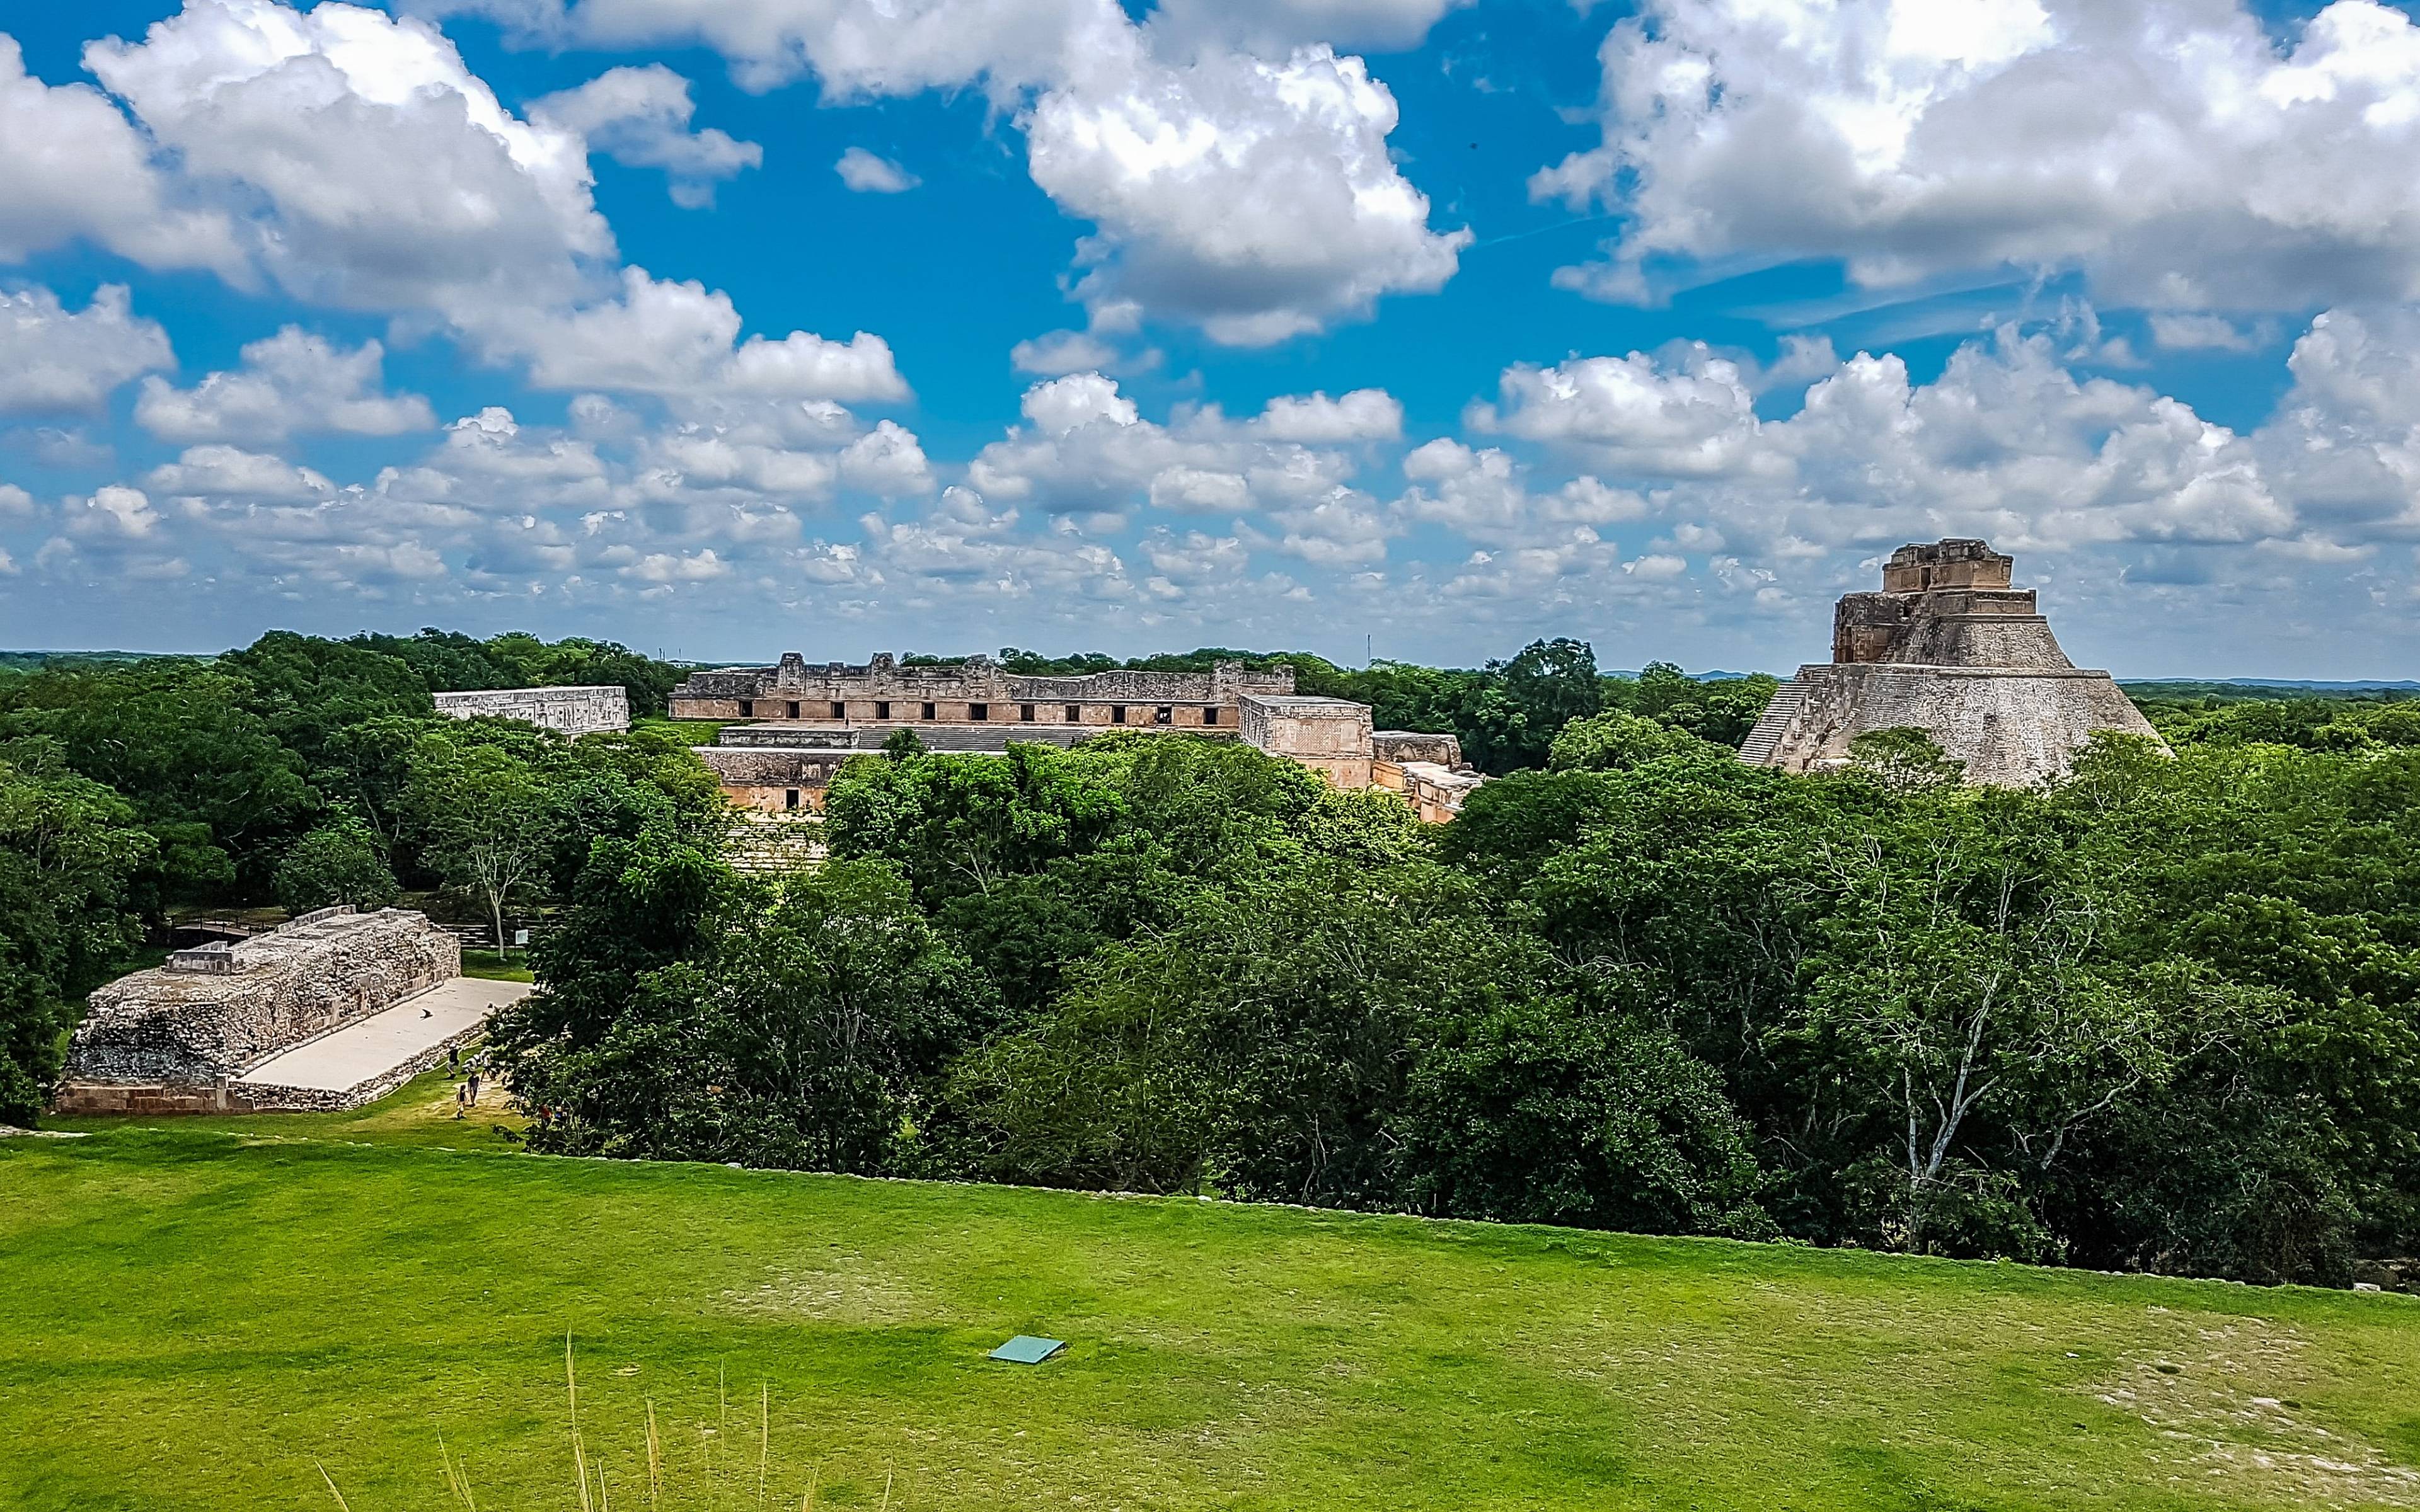 Visite du site de Uxmal, rivale de Chichén Itzá, et de la ville de Campeche